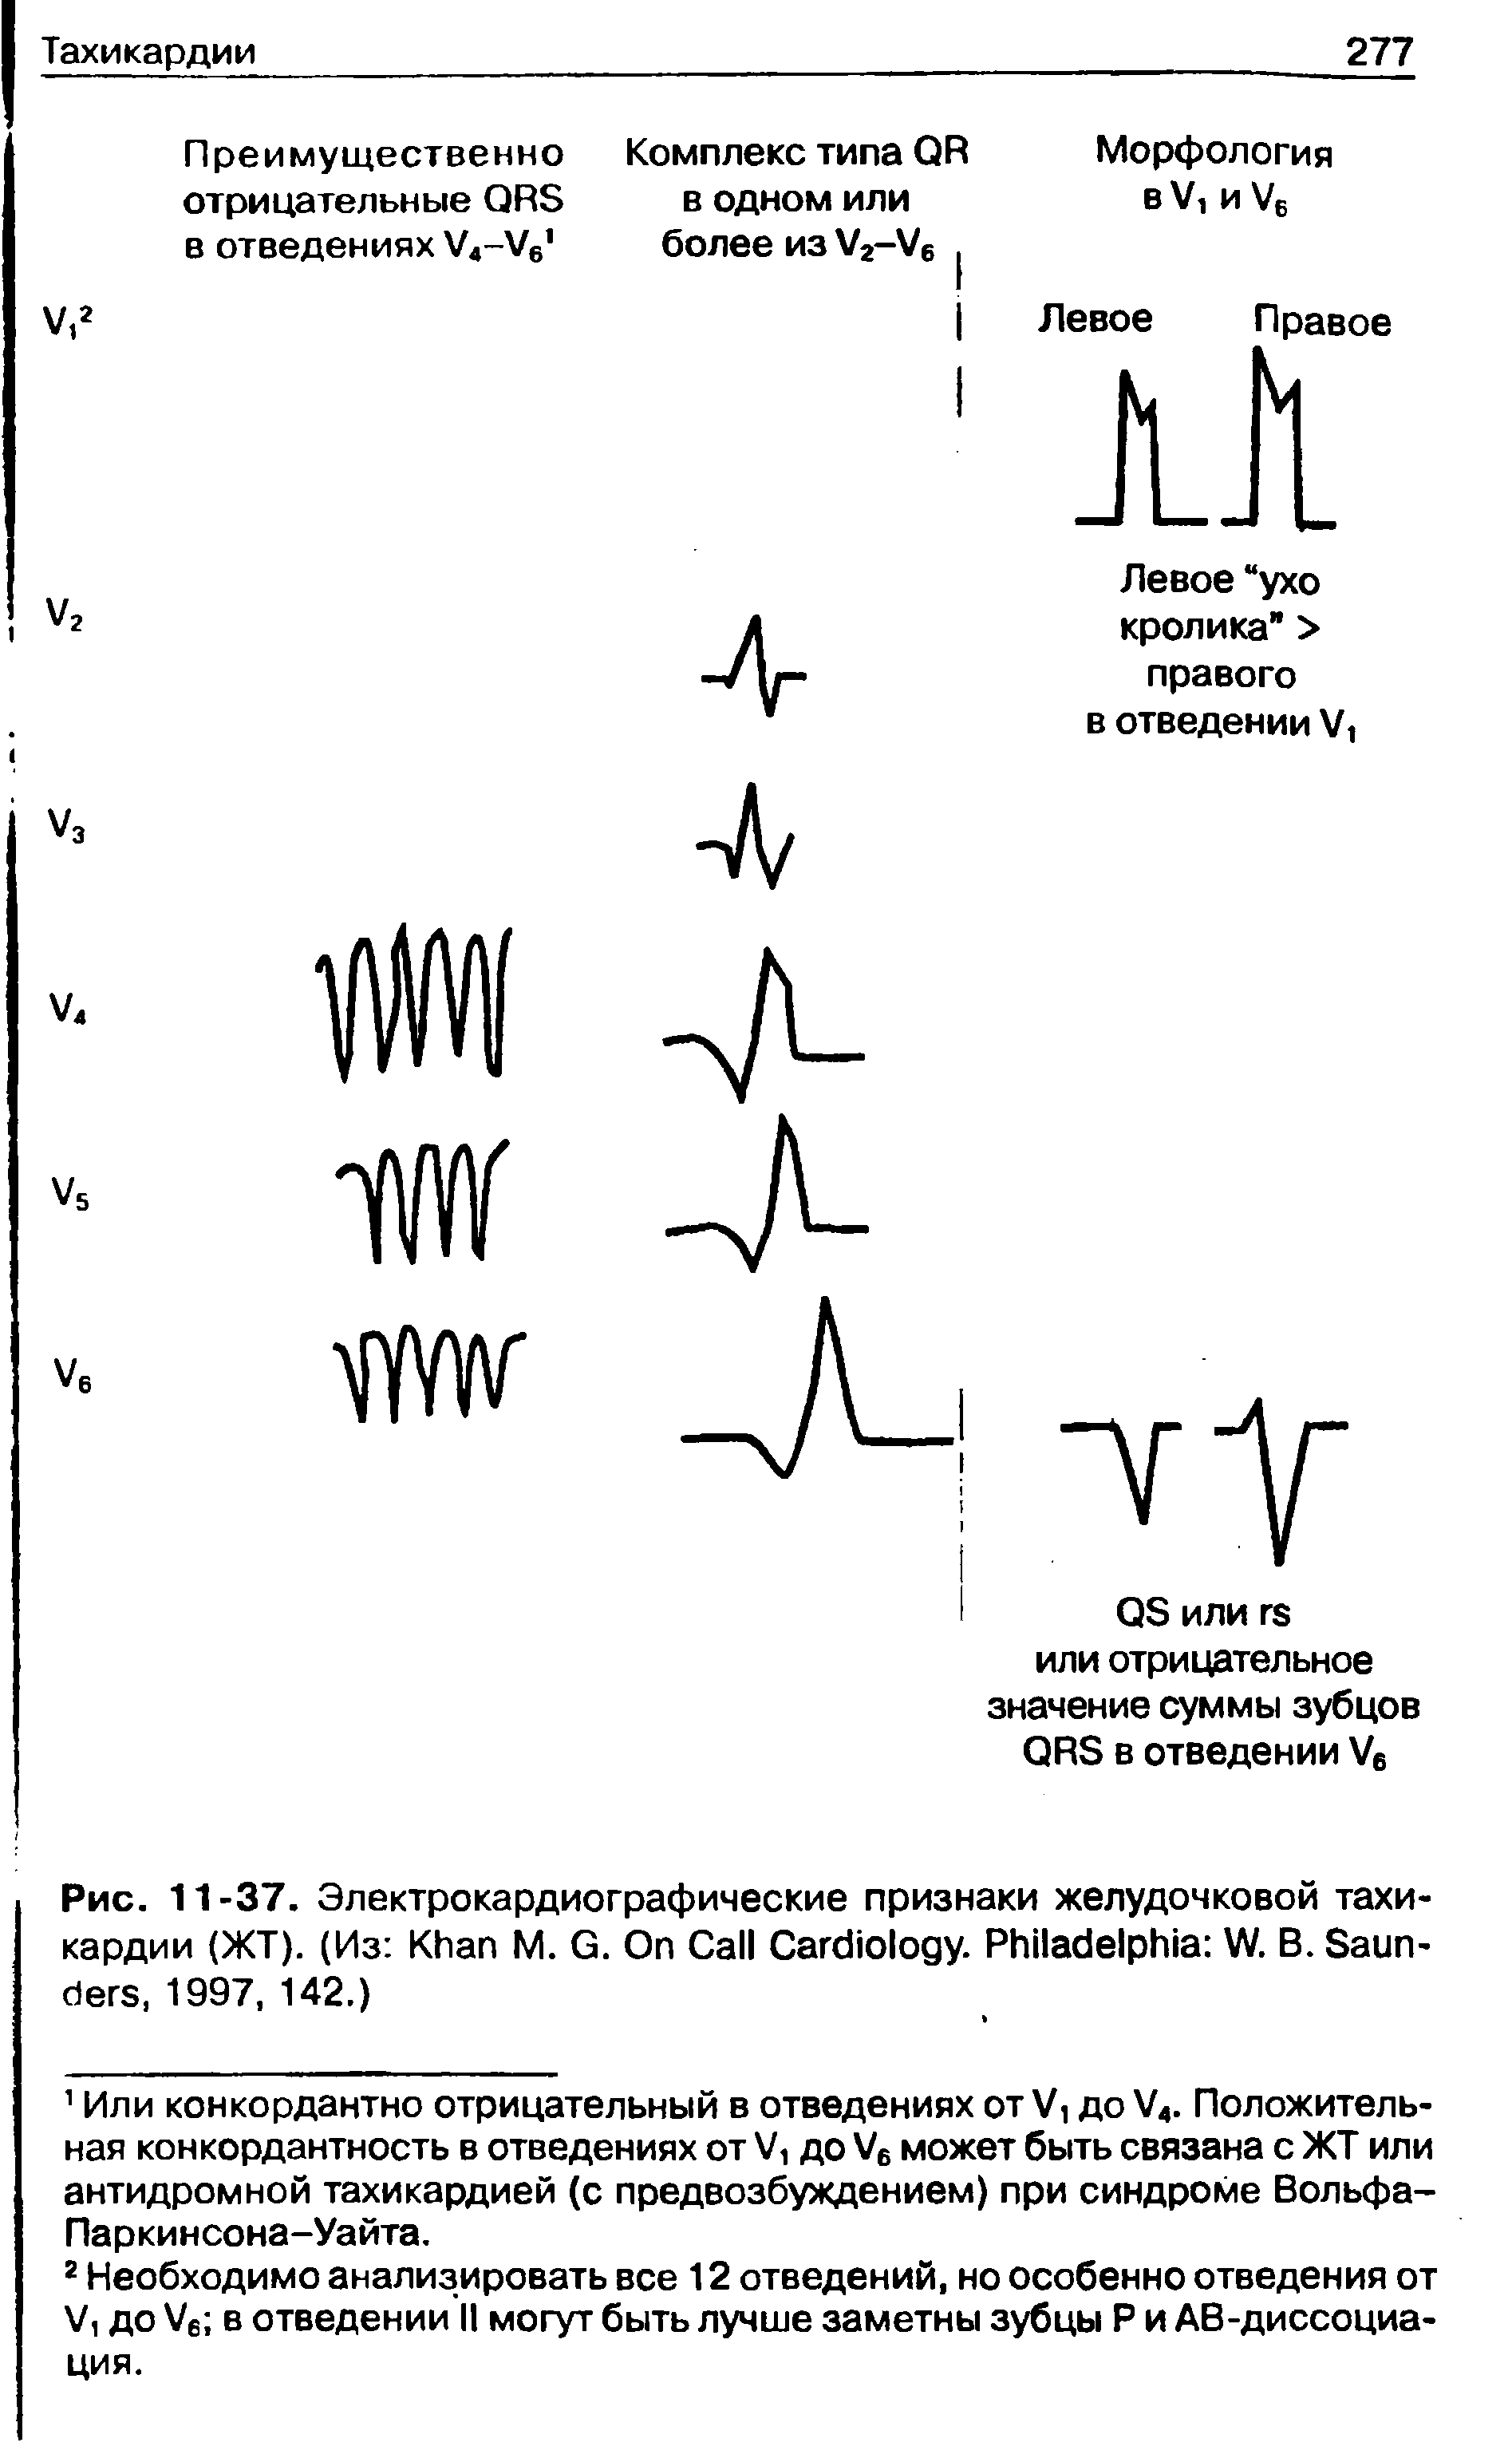 Рис. 11 -37. Электрокардиографические признаки желудочковой тахикардии (ЖТ). (Из K М. G. O C C . P W. В. S , 1997, 142.)...